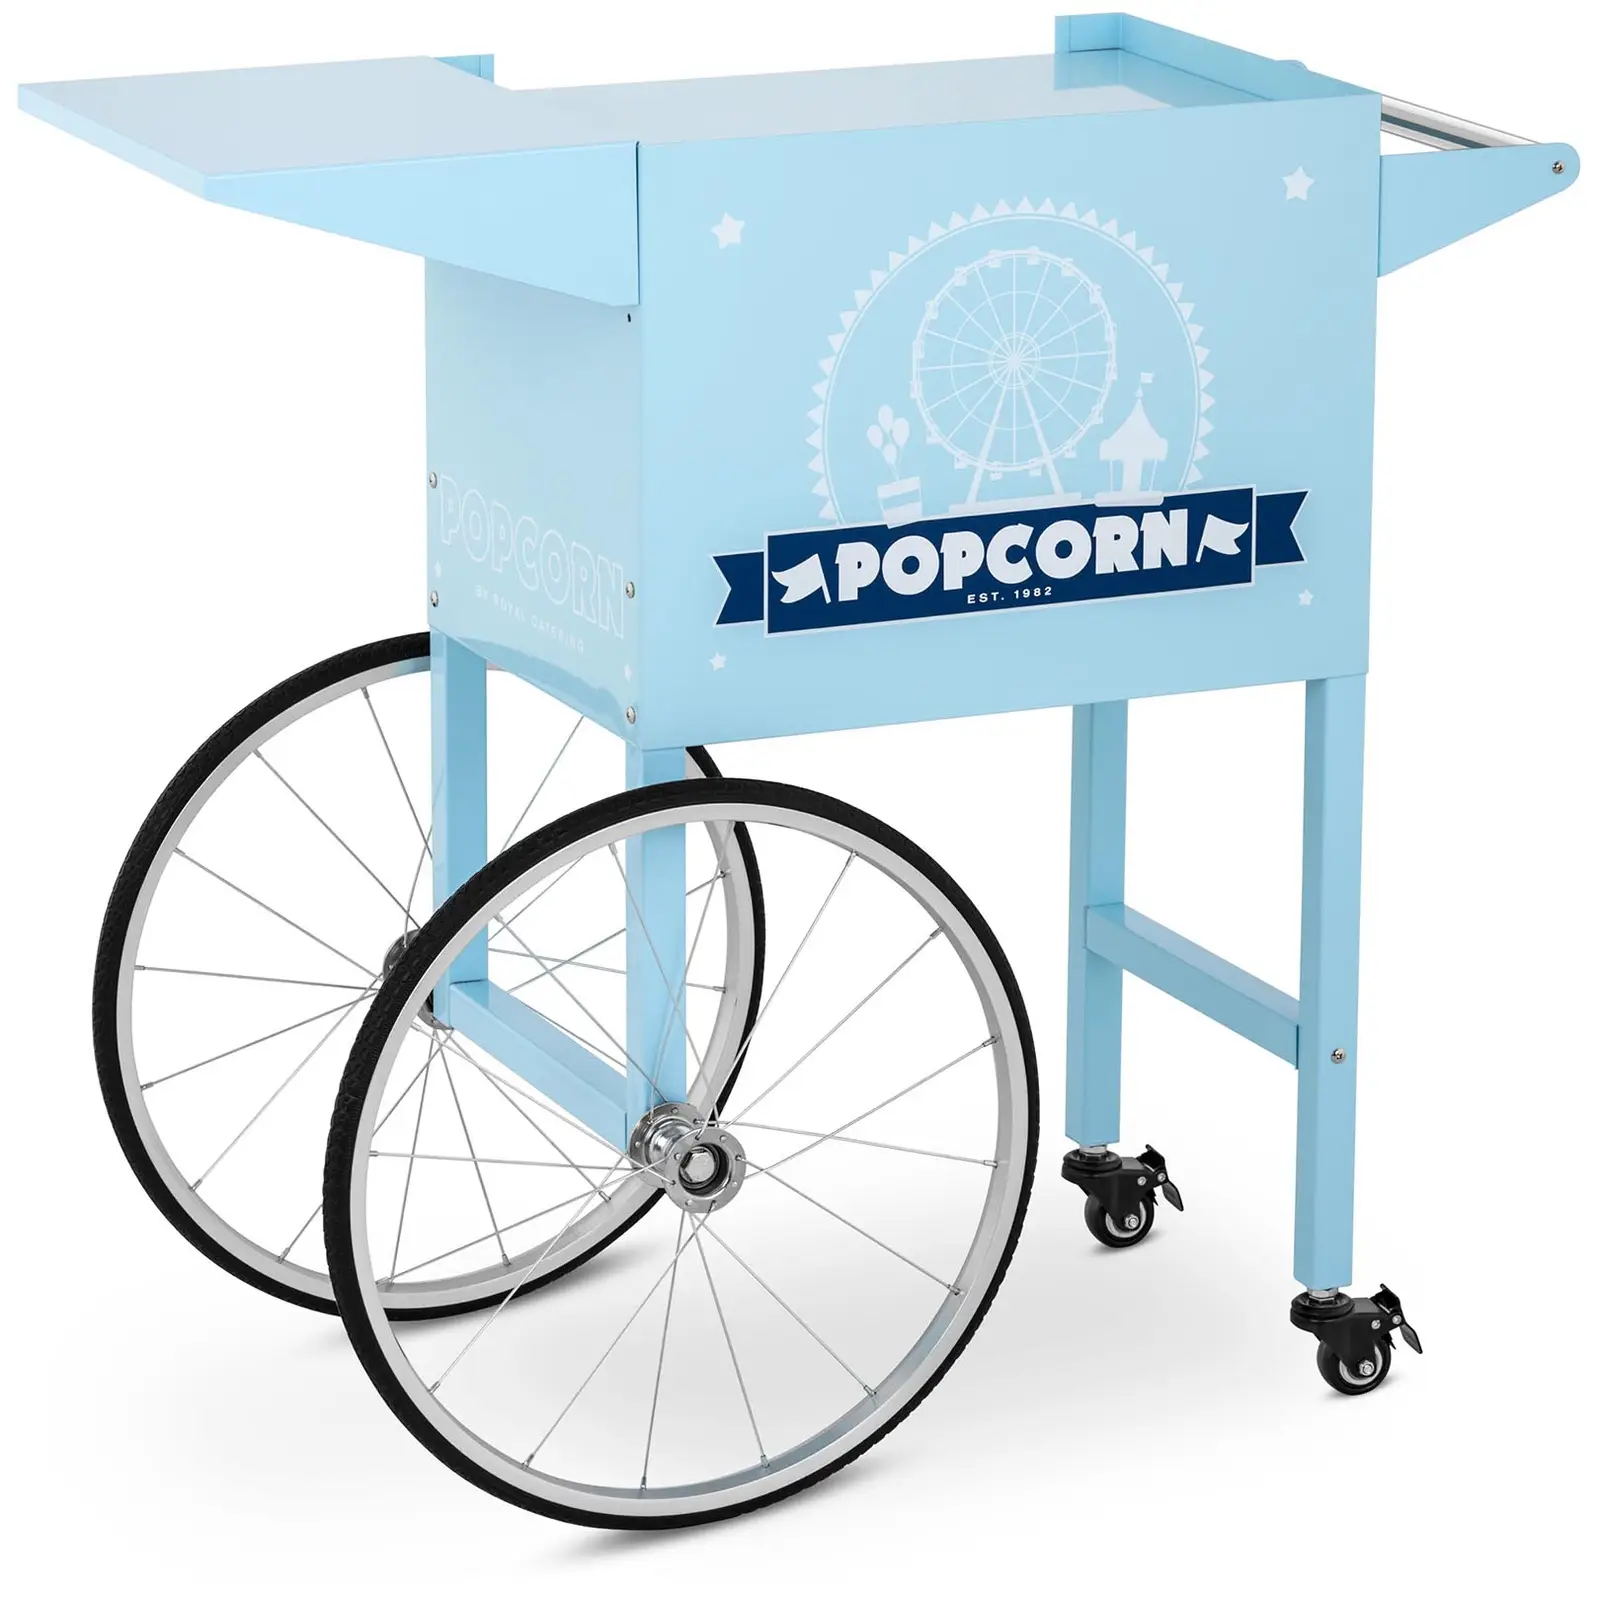 Wagen für Popcornmaschine - blau